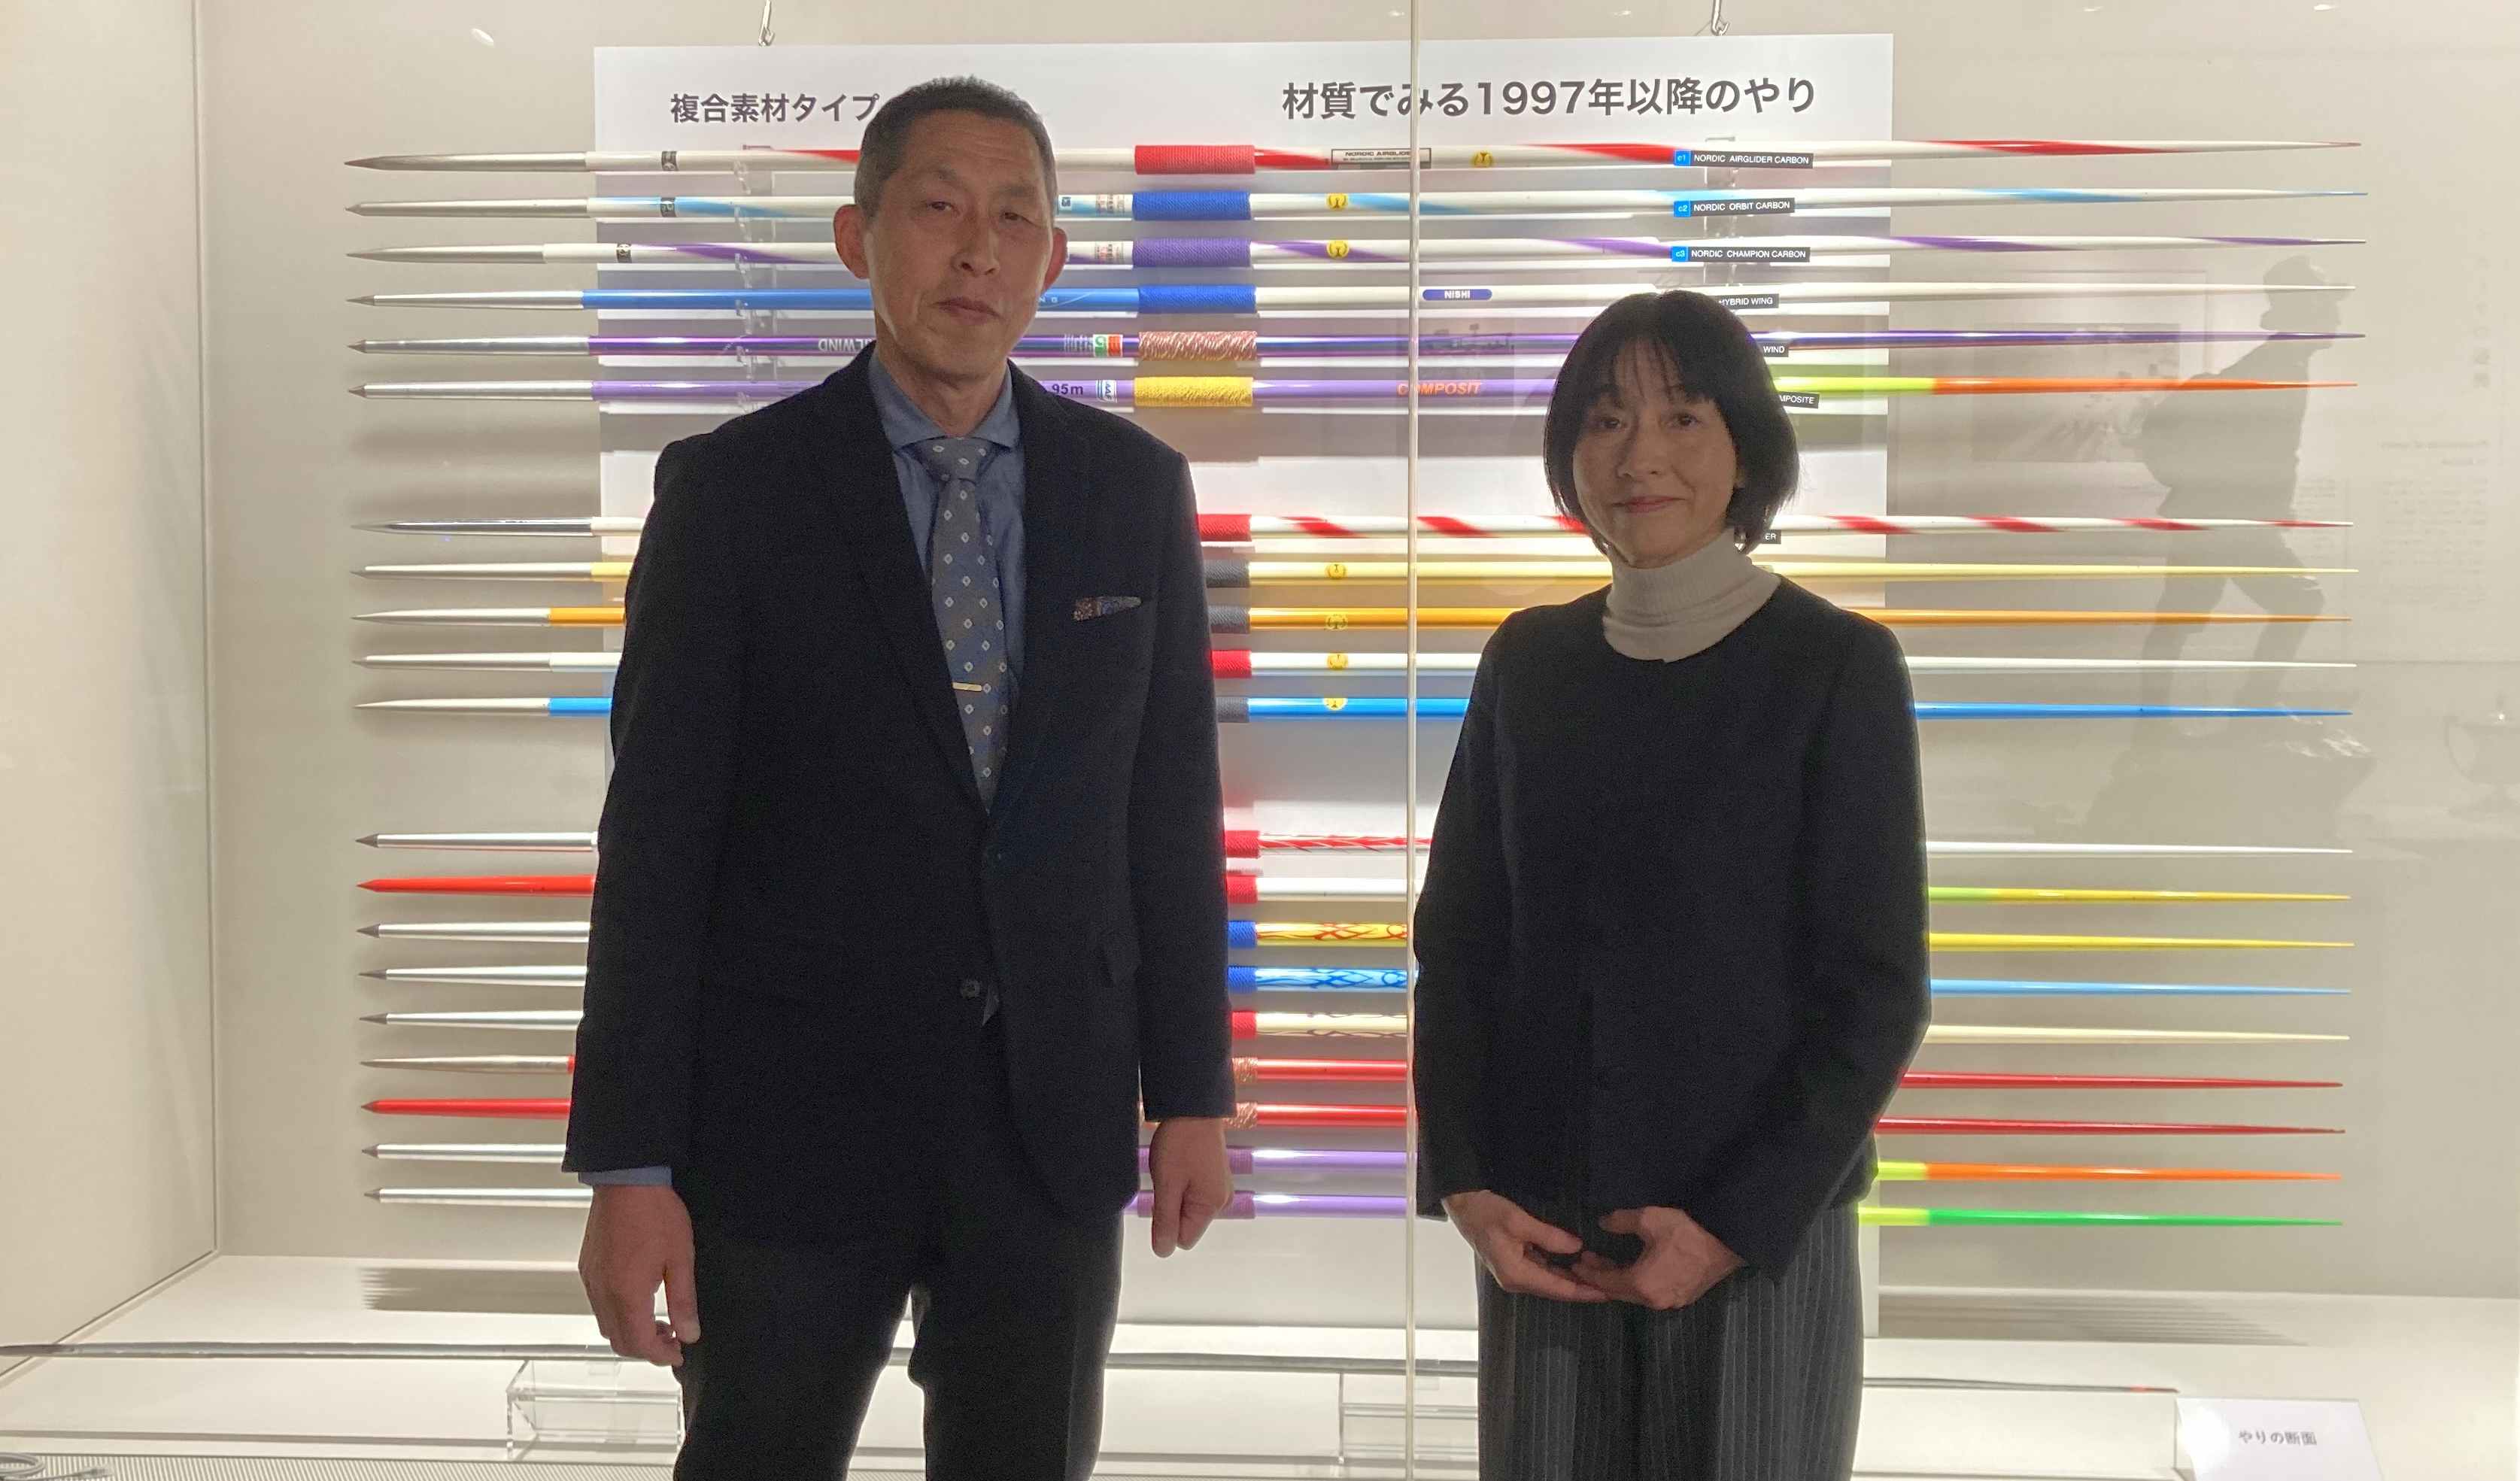 前田教授と須藤館長が並んで立っている写真。二人の後ろにはやりが展示されている。